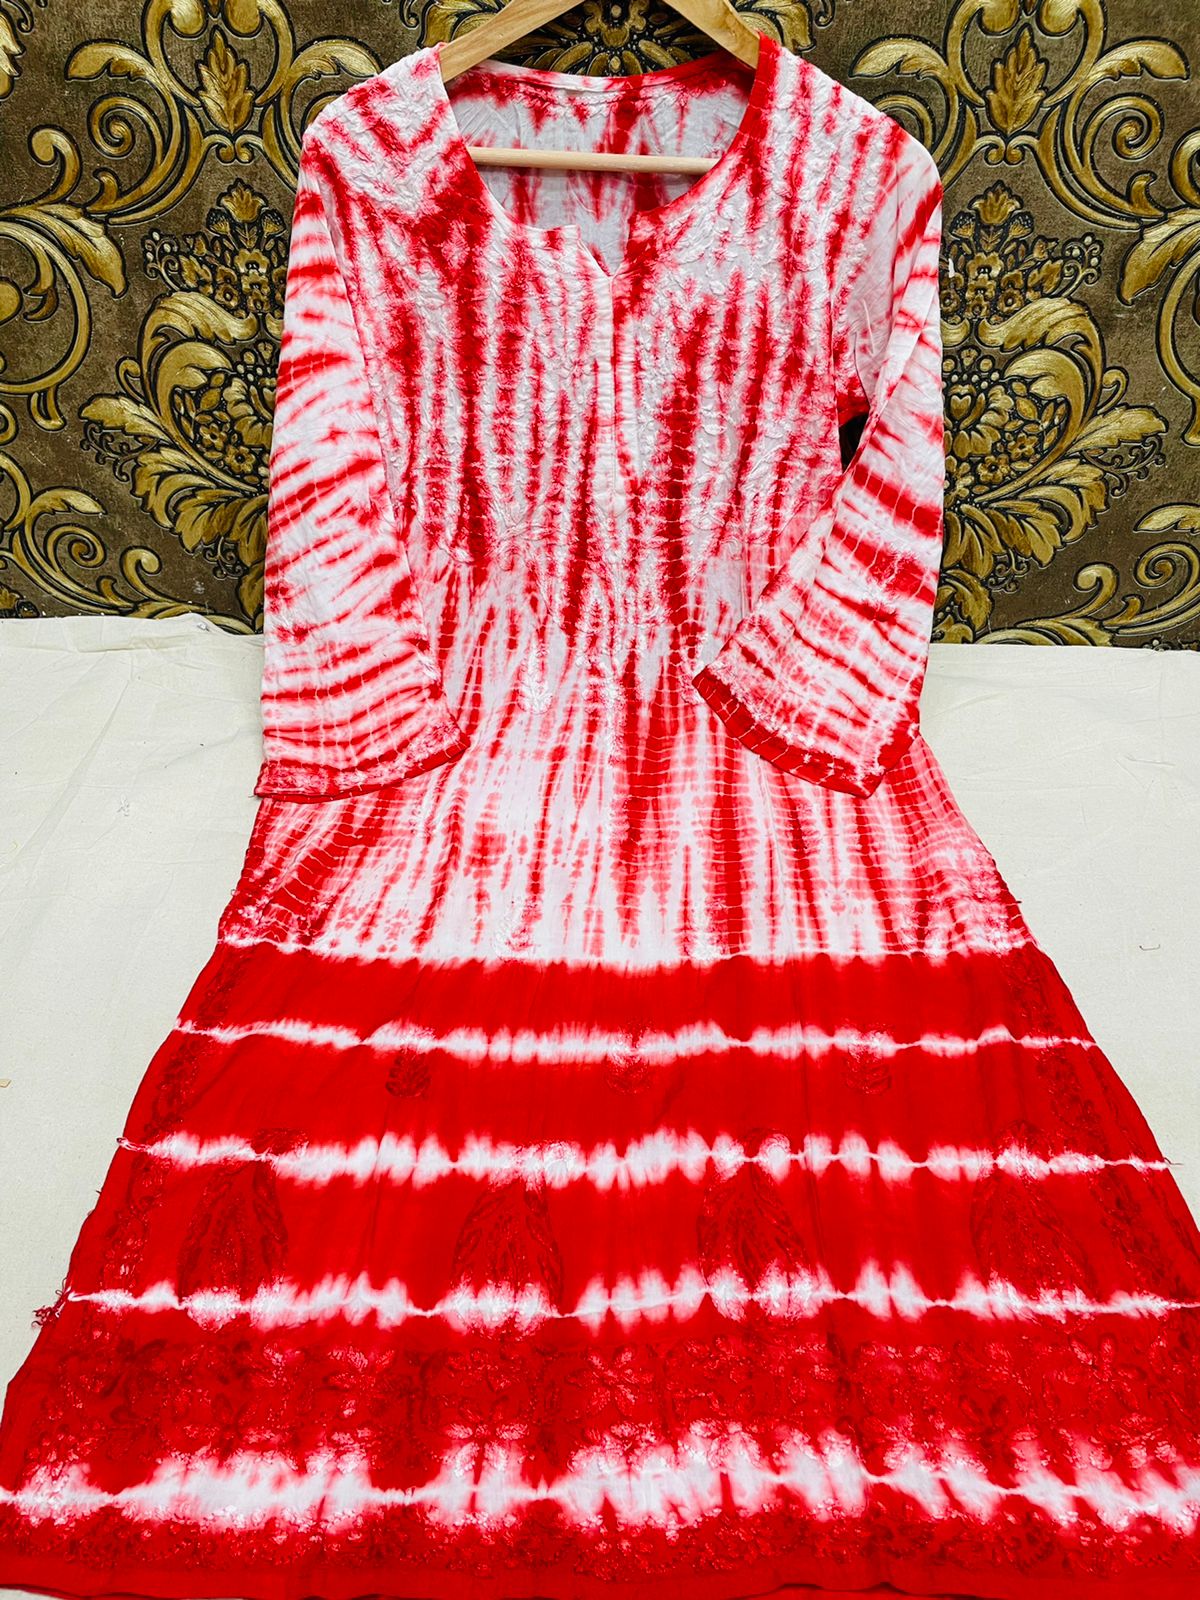 Printed Tie Dye Kurtis Fabrics at Rs 90/meter in Jaipur | ID: 17550170348